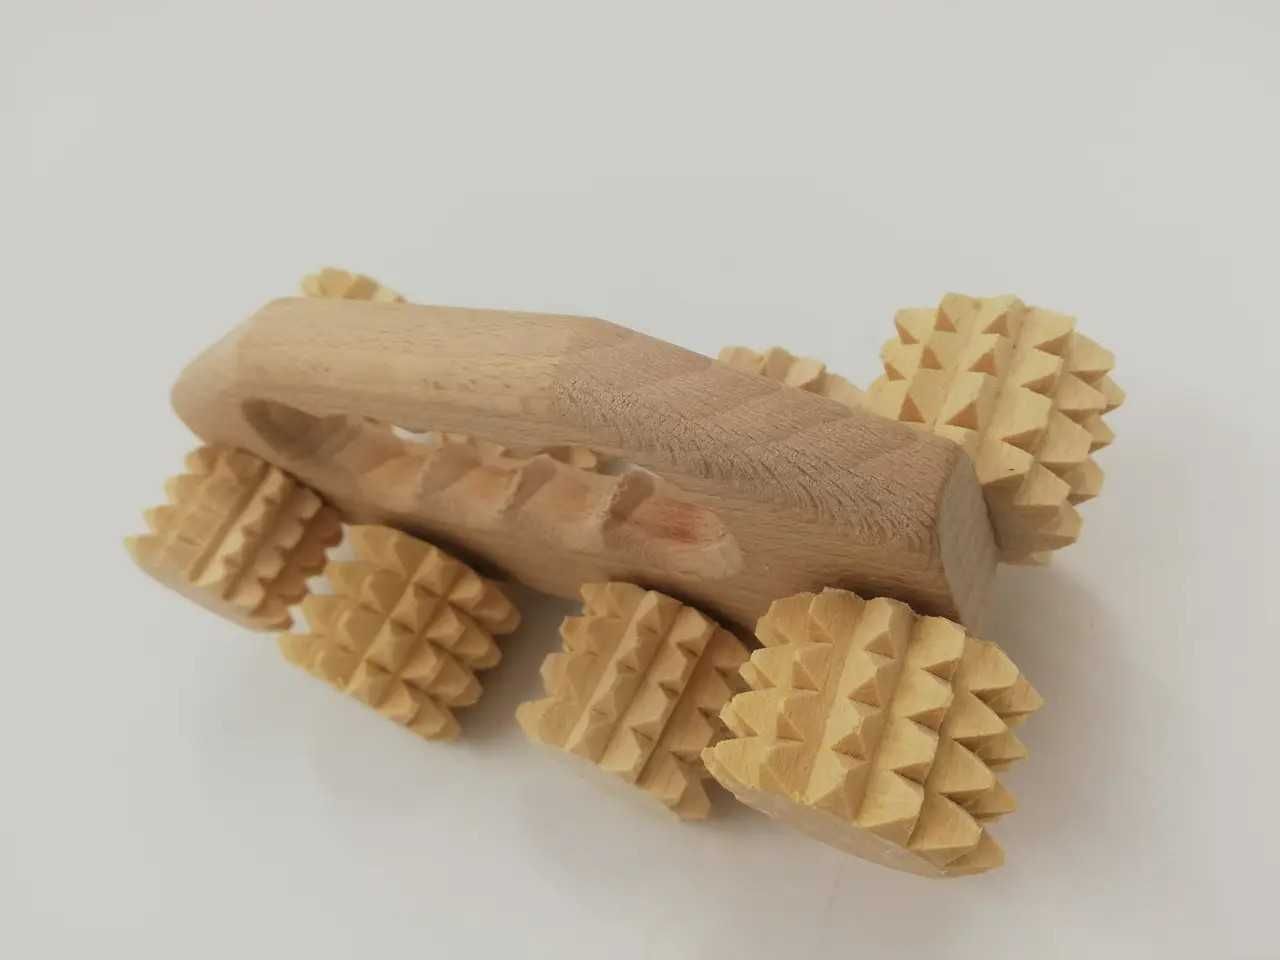 Массажер для тела антицеллюлитный деревянный зубчатый  колючая береза